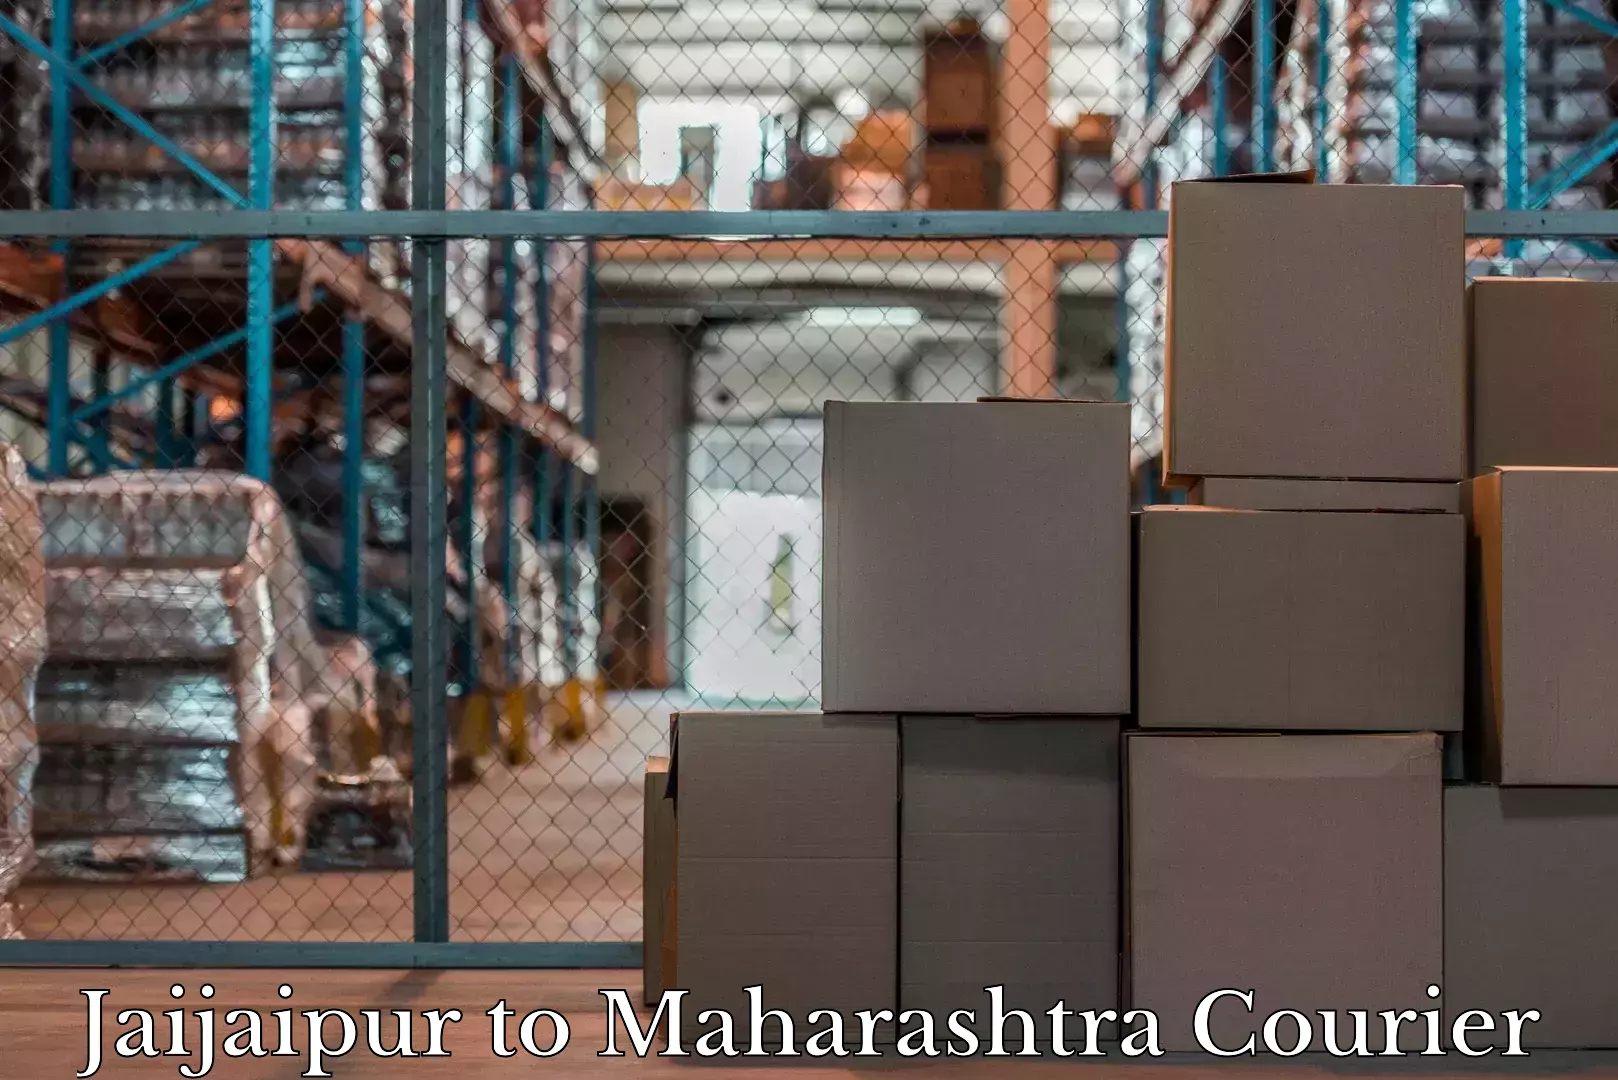 Baggage shipping experts Jaijaipur to Maharashtra